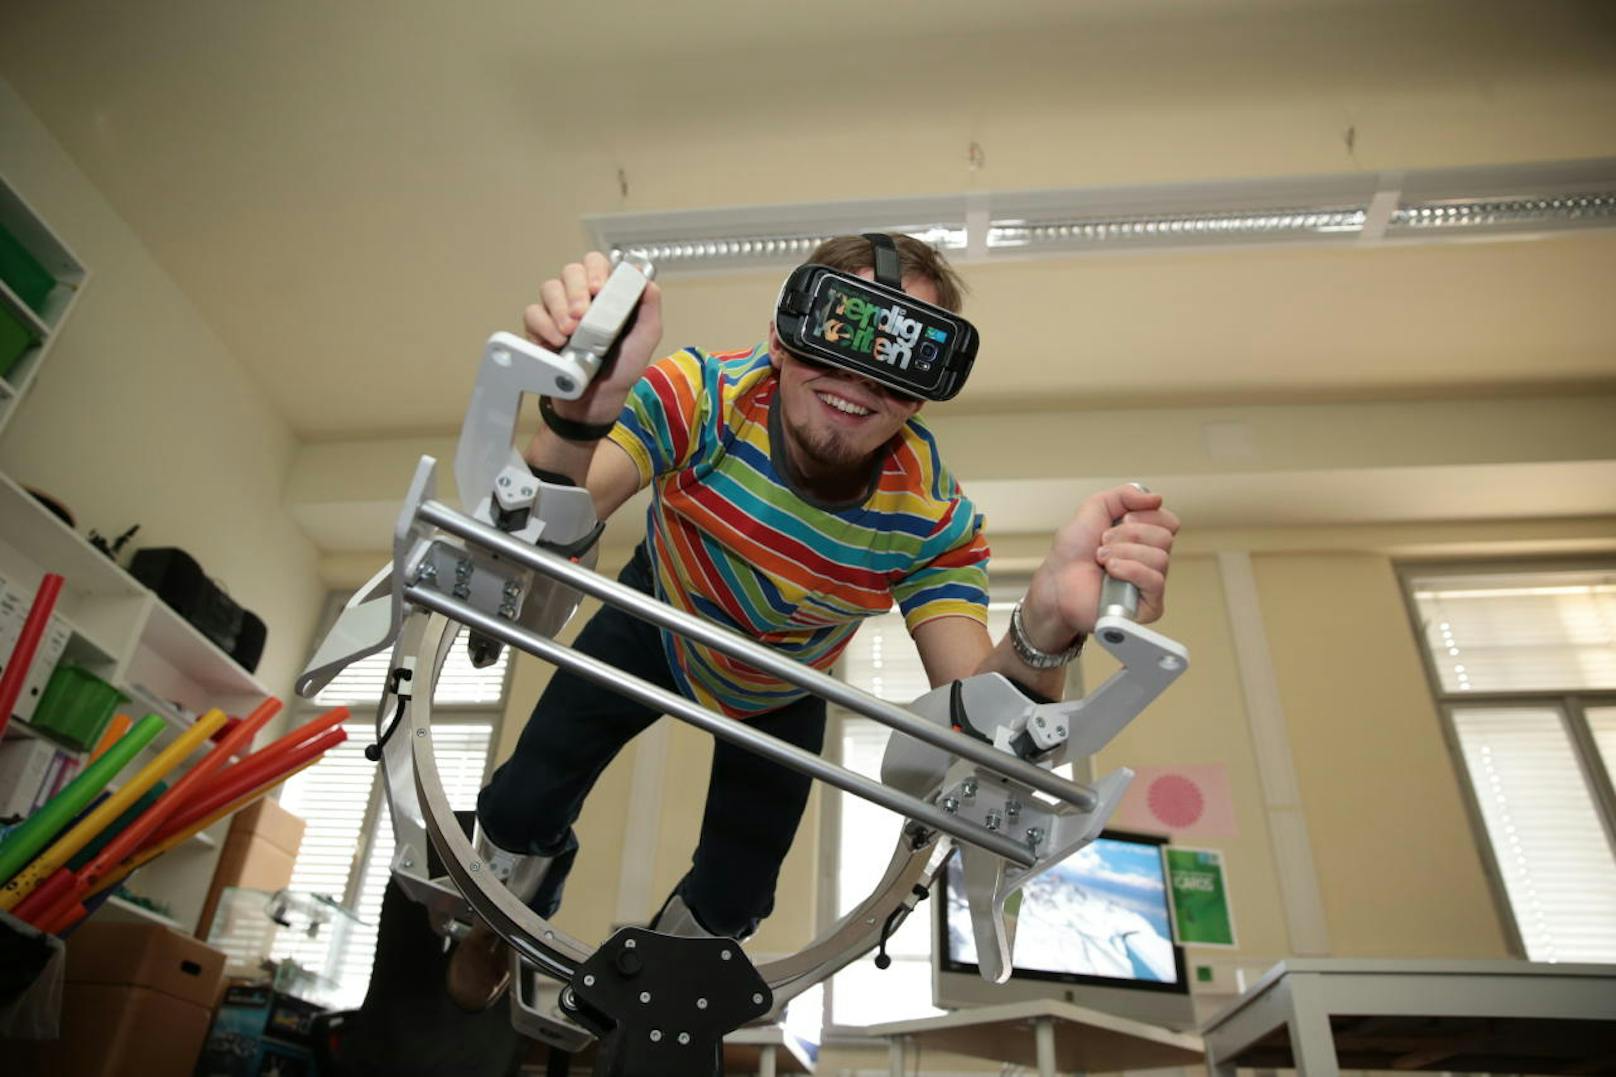 Fliegen wie das Christkind kann man mit dem Gerät "Icaros" - über Virtual Reality-Brille wird die 3D-Landschaft eingeblendet, gesteuert wird über Verlagerung des Körpers. Fabian Aigner (21) vom "Museum der Nerdigkeiten" zeigt vor, wie's gemacht wird.